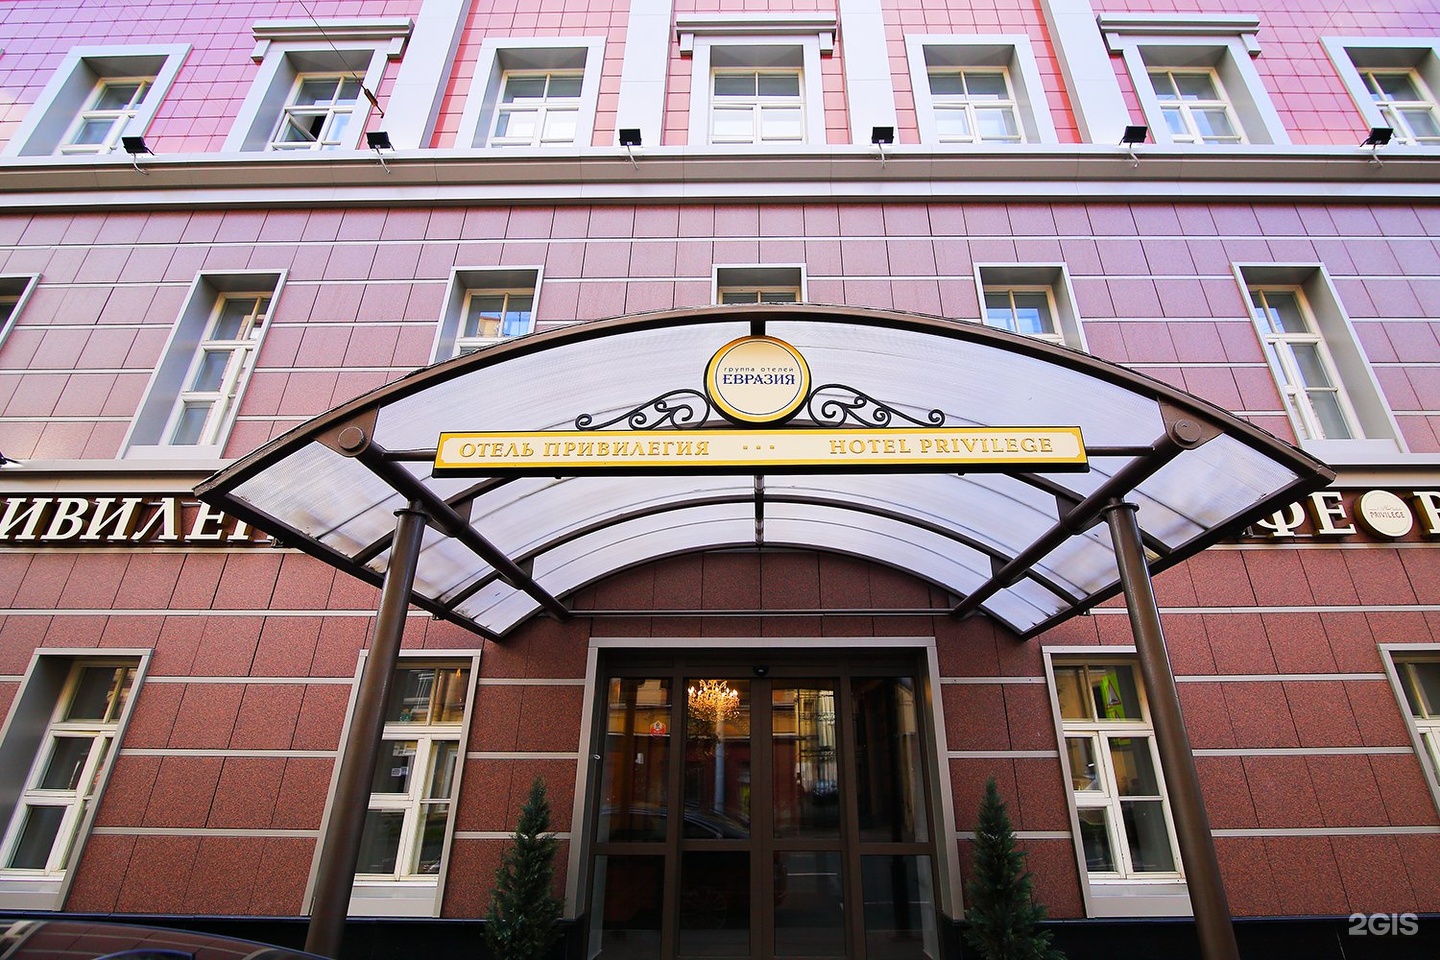 отель привилегия санкт петербург